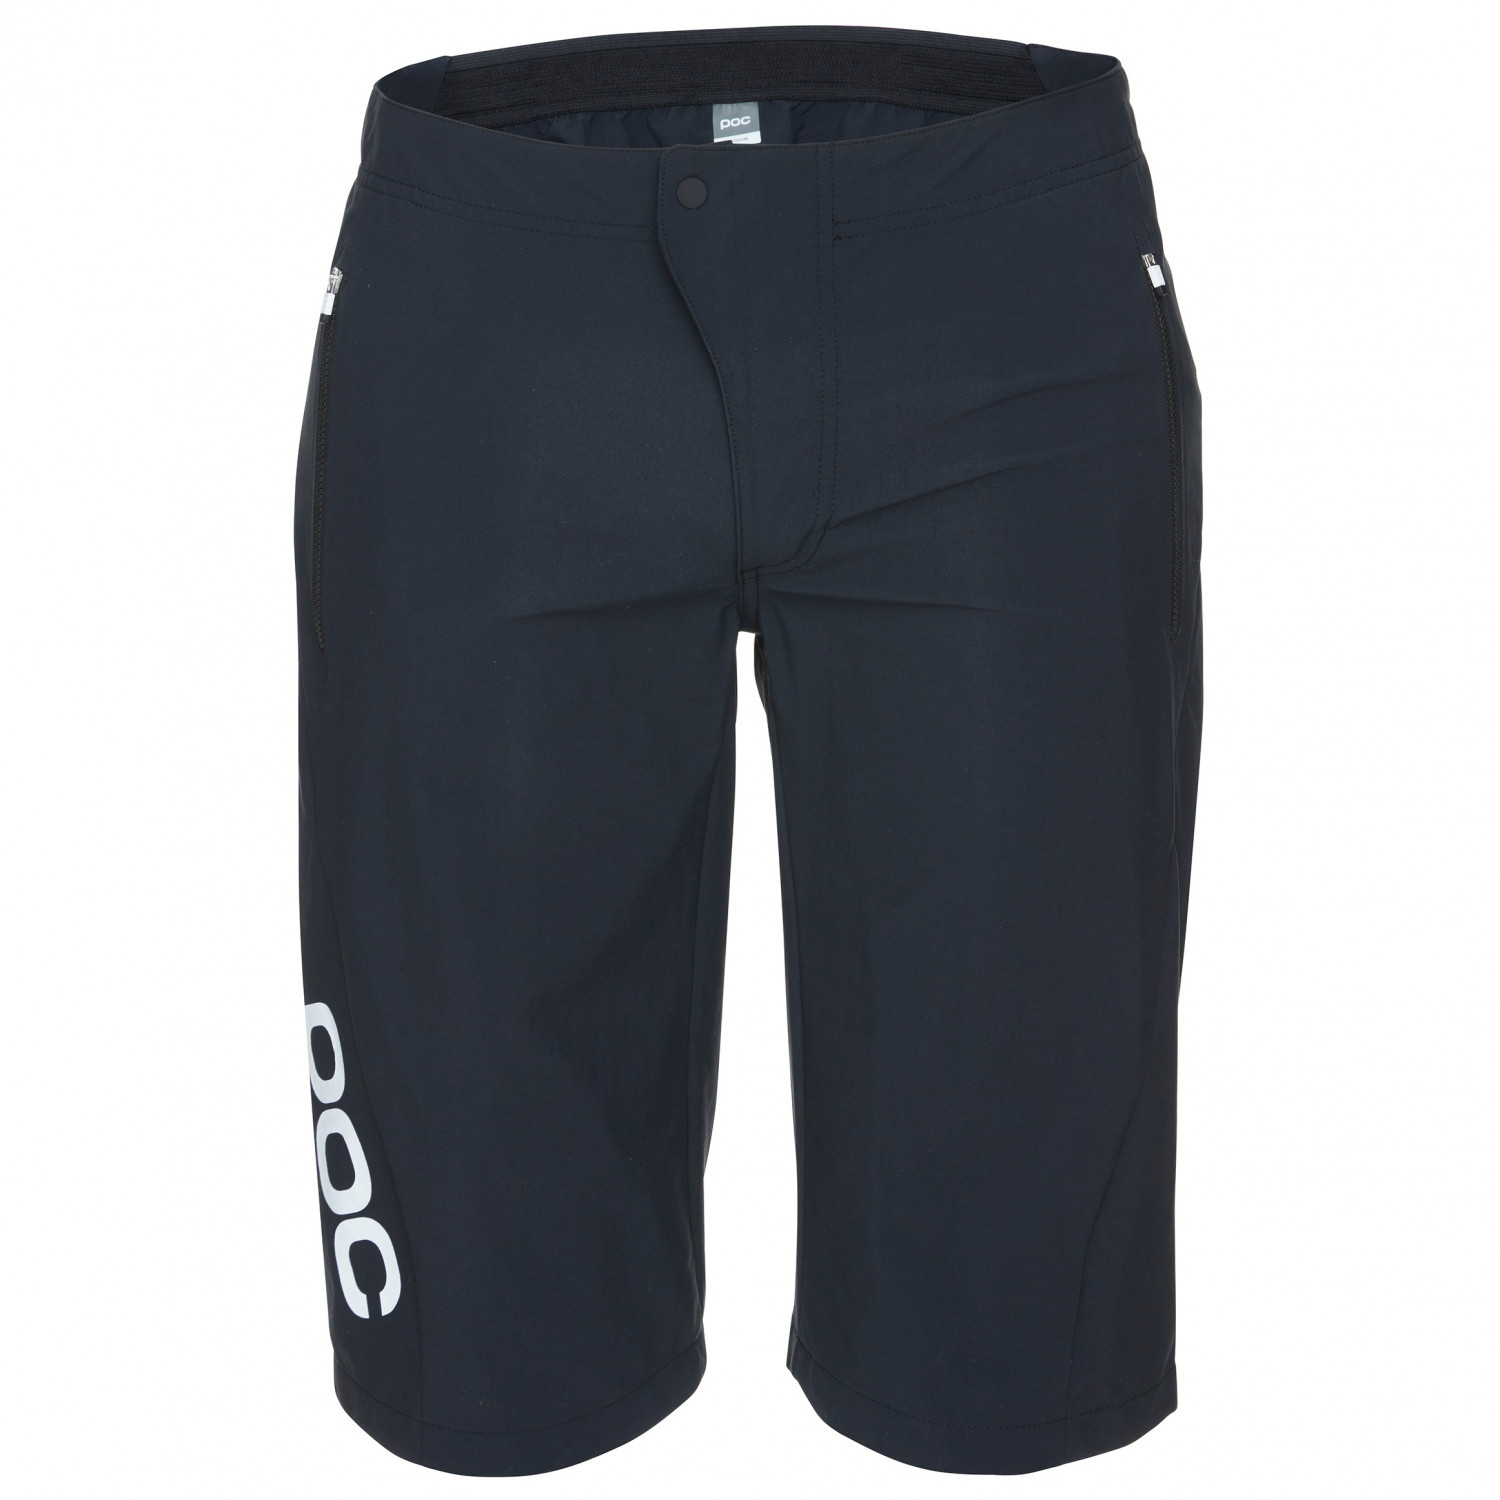 Велосипедные шорты Poc Essential Enduro Shorts, цвет Uranium Black